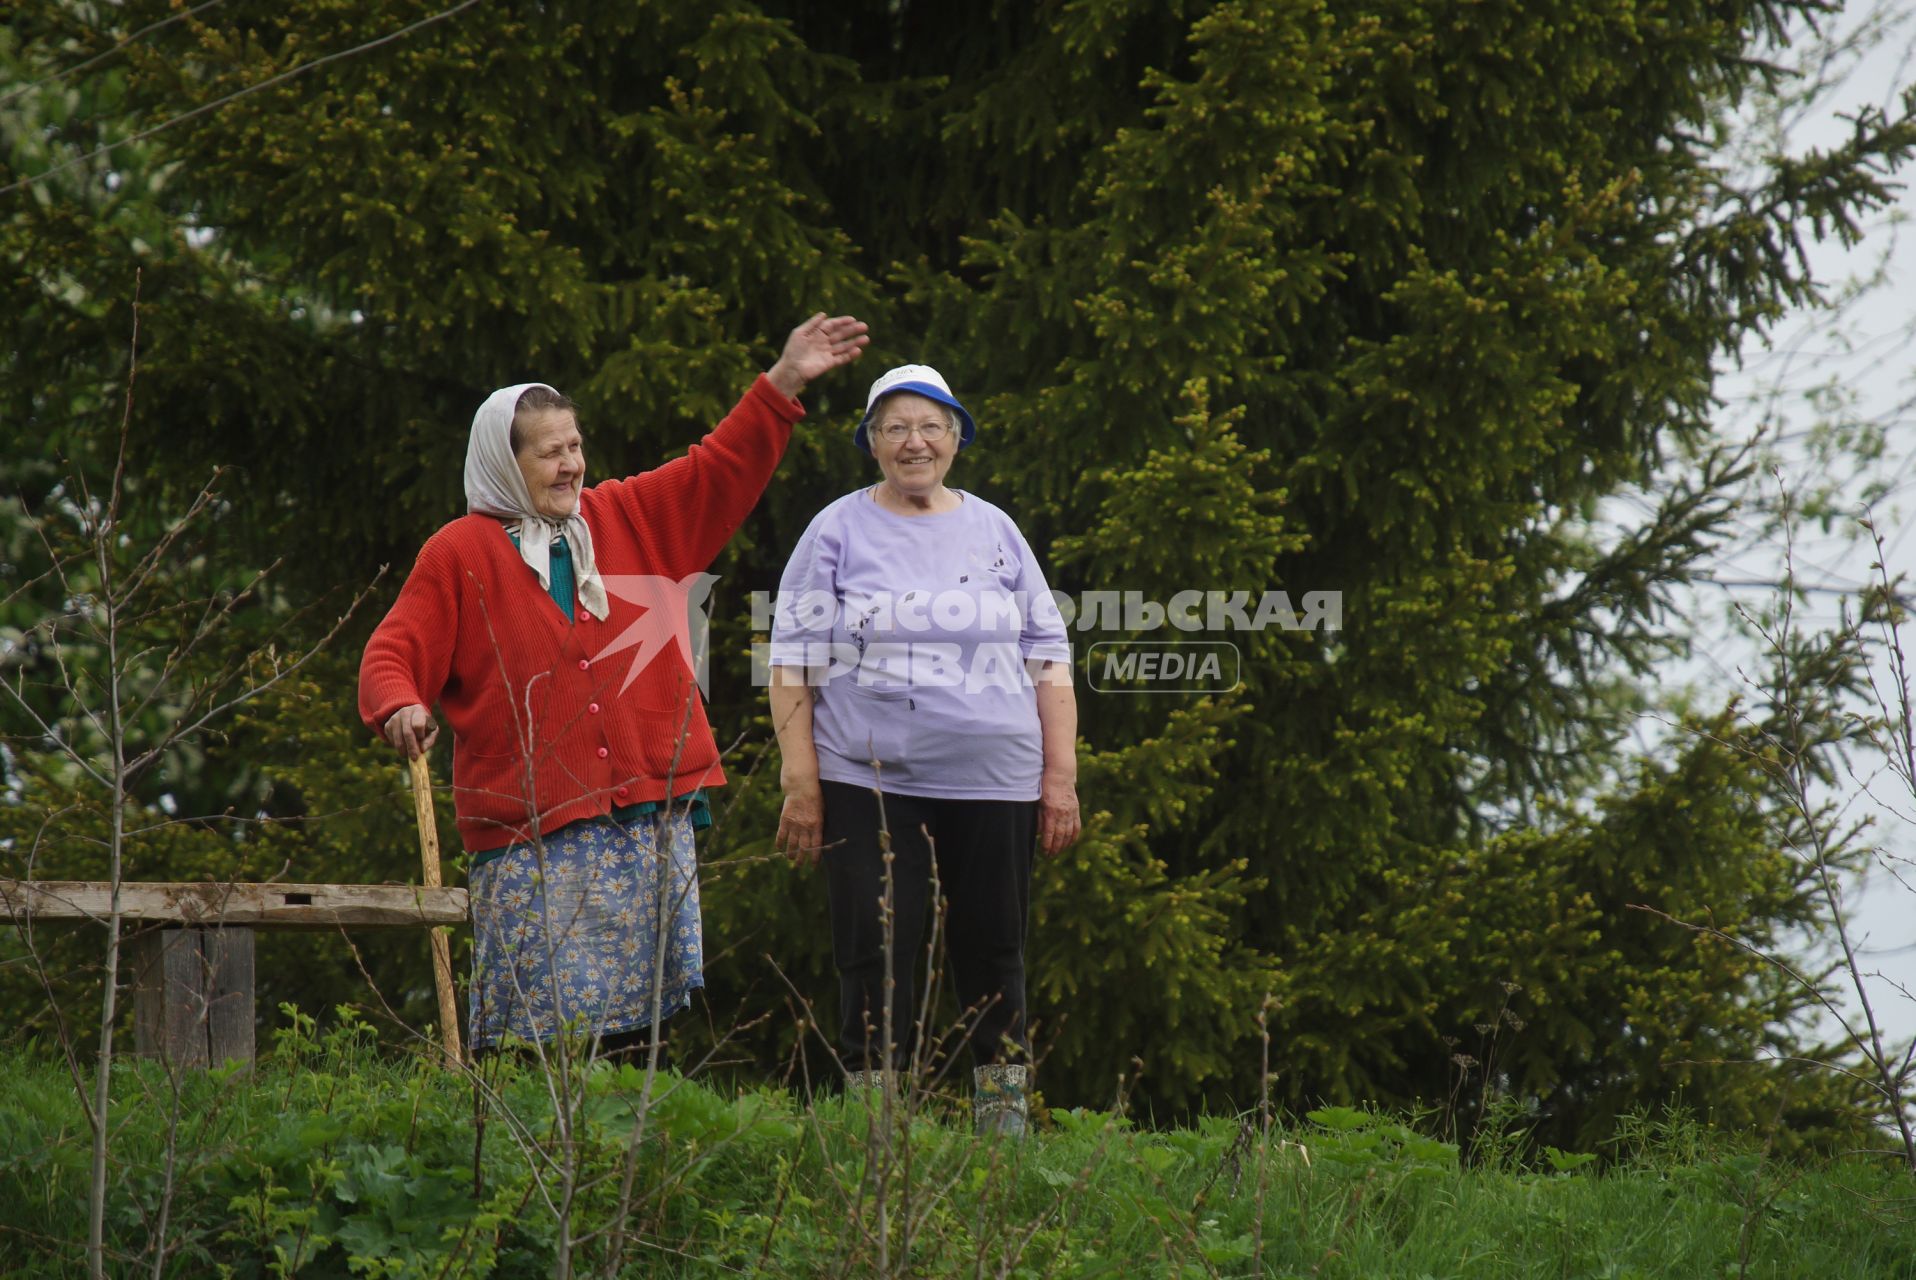 Бабушки из деревни Харенки приветствуют людей. сплаляющихся по реке Чусовая. Свердловская область